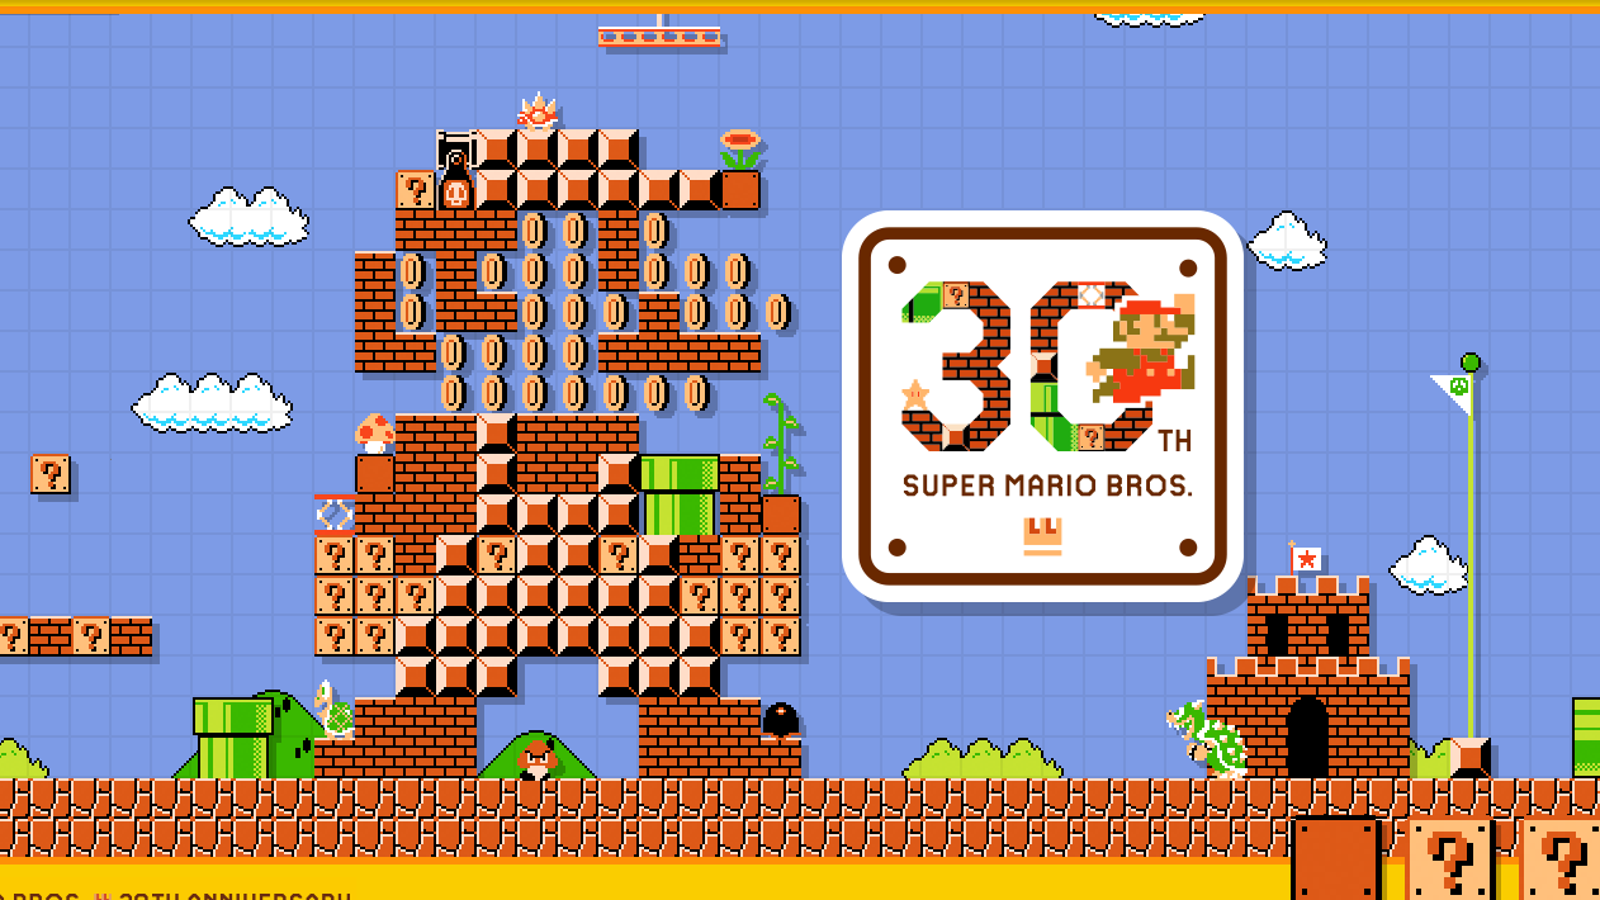 Super Mario bros., 25 anos, superou os games para invadir cultura pop